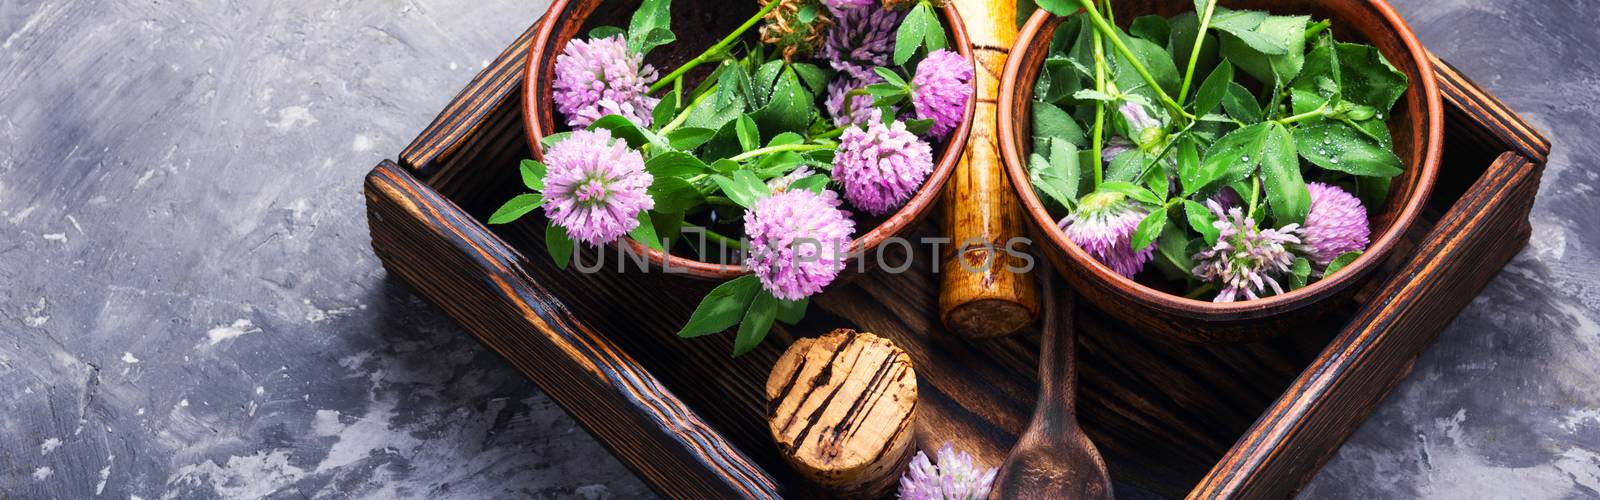 Clover or trefoil flower medicinal herbs.Healing herbs